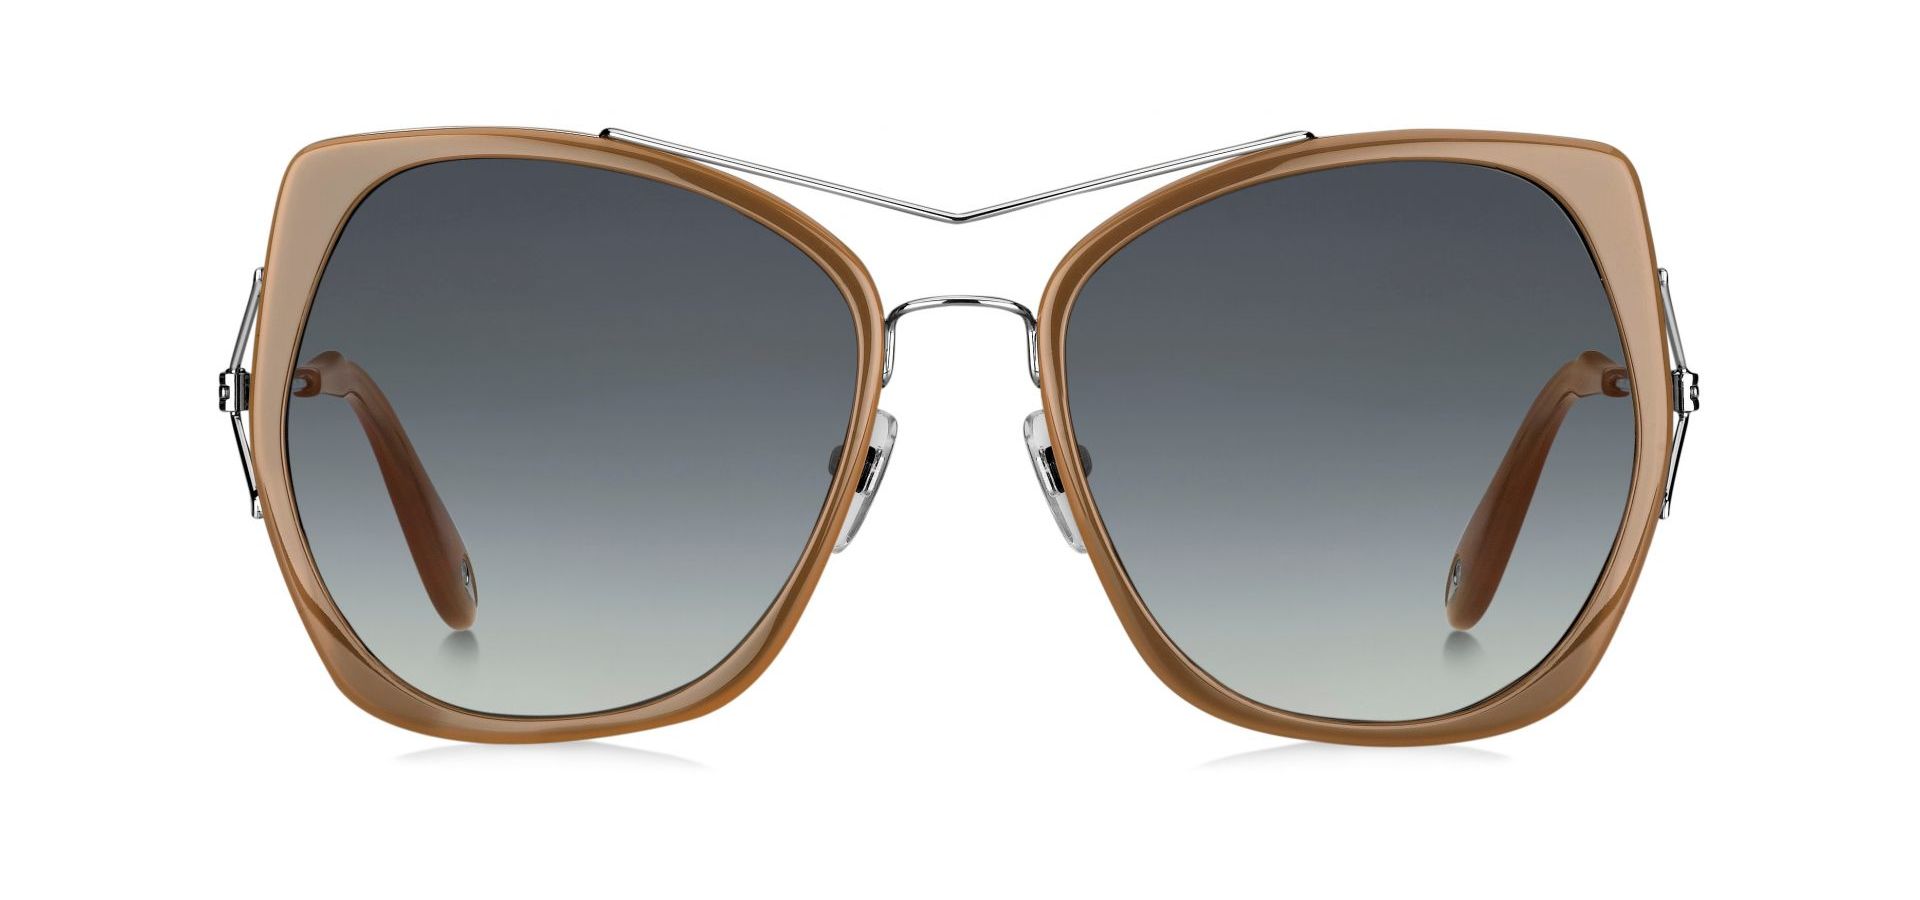 Sunčane naočale Givenchy GV 7031/S: Boja: Light Brown/ Nude, Veličina: 55-19-140, Spol: ženske, Materijal: titanij